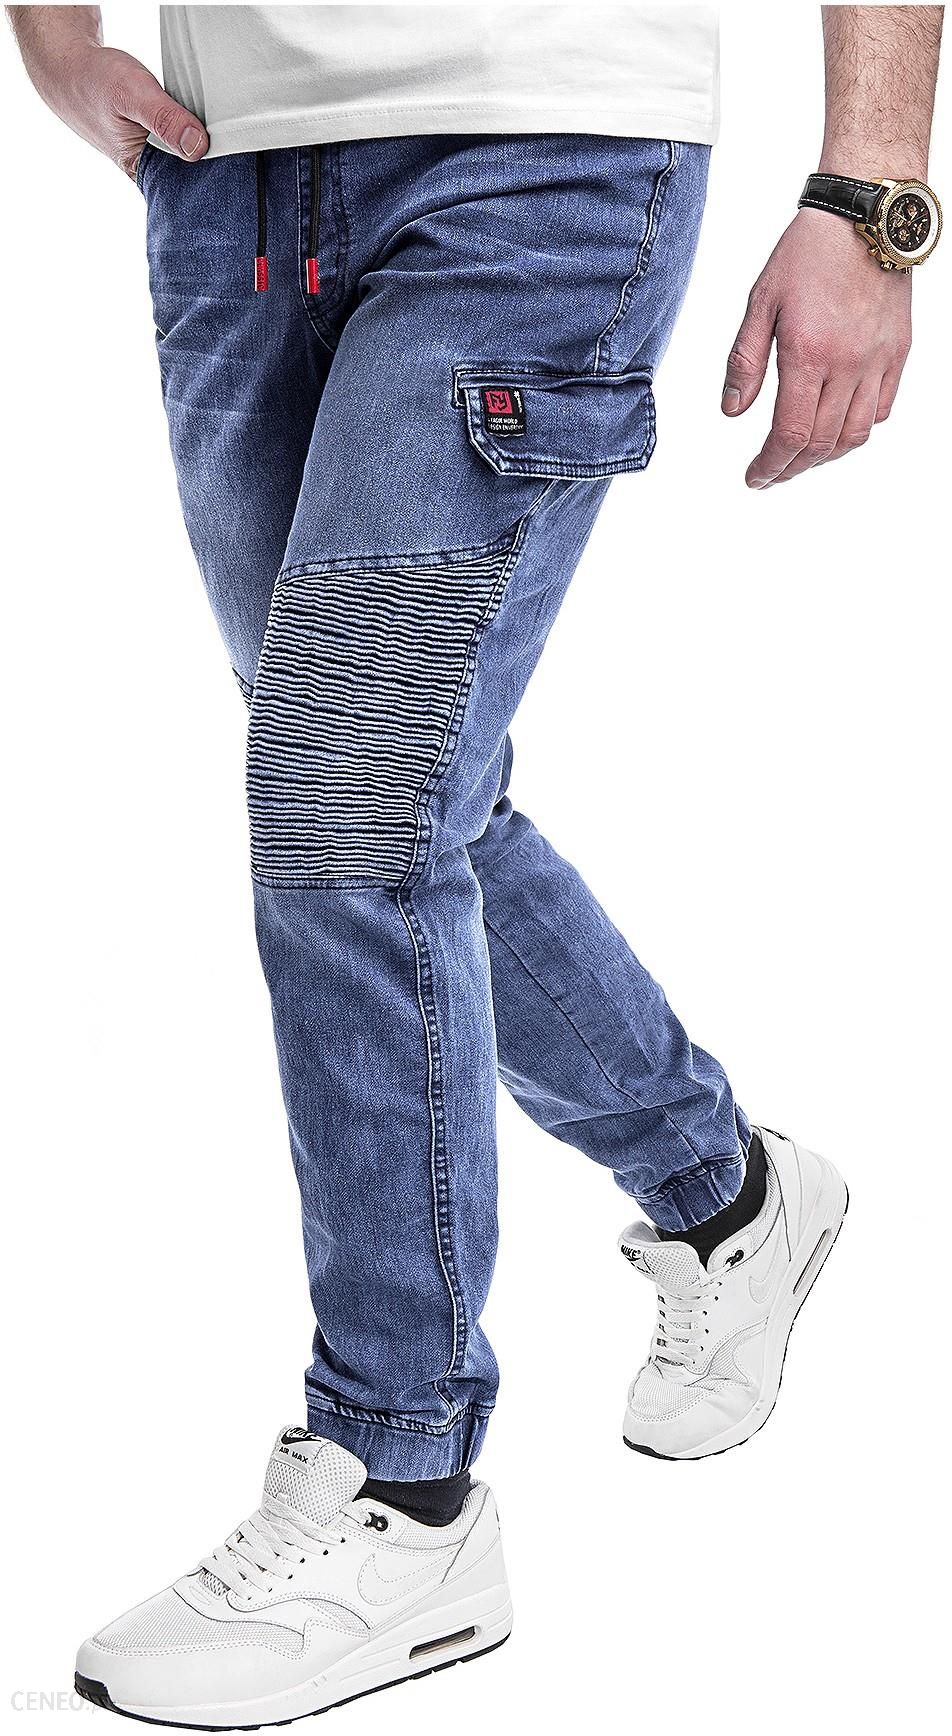  Spodnie jeansowe męskie joggery HY356 - niebieskie